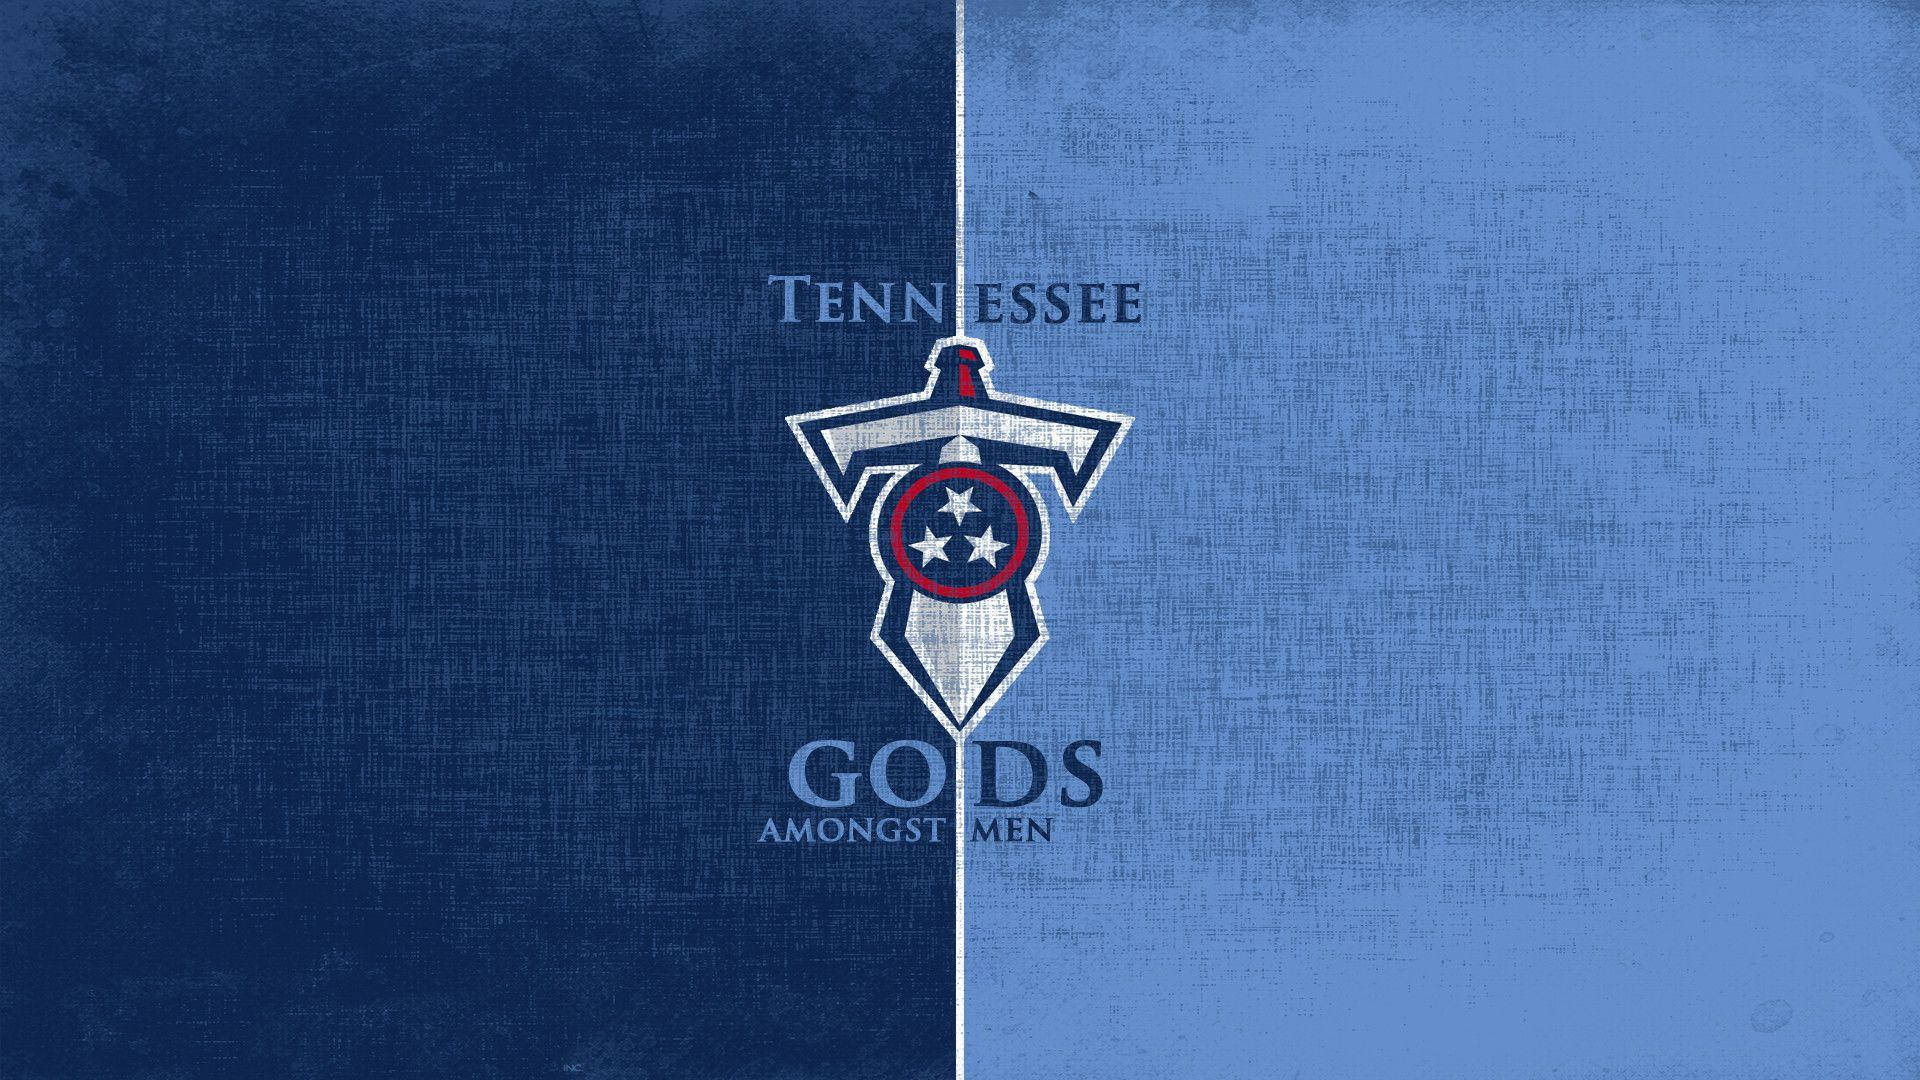 Titãsdo Tennessee, Deuses Entre Os Homens. Papel de Parede